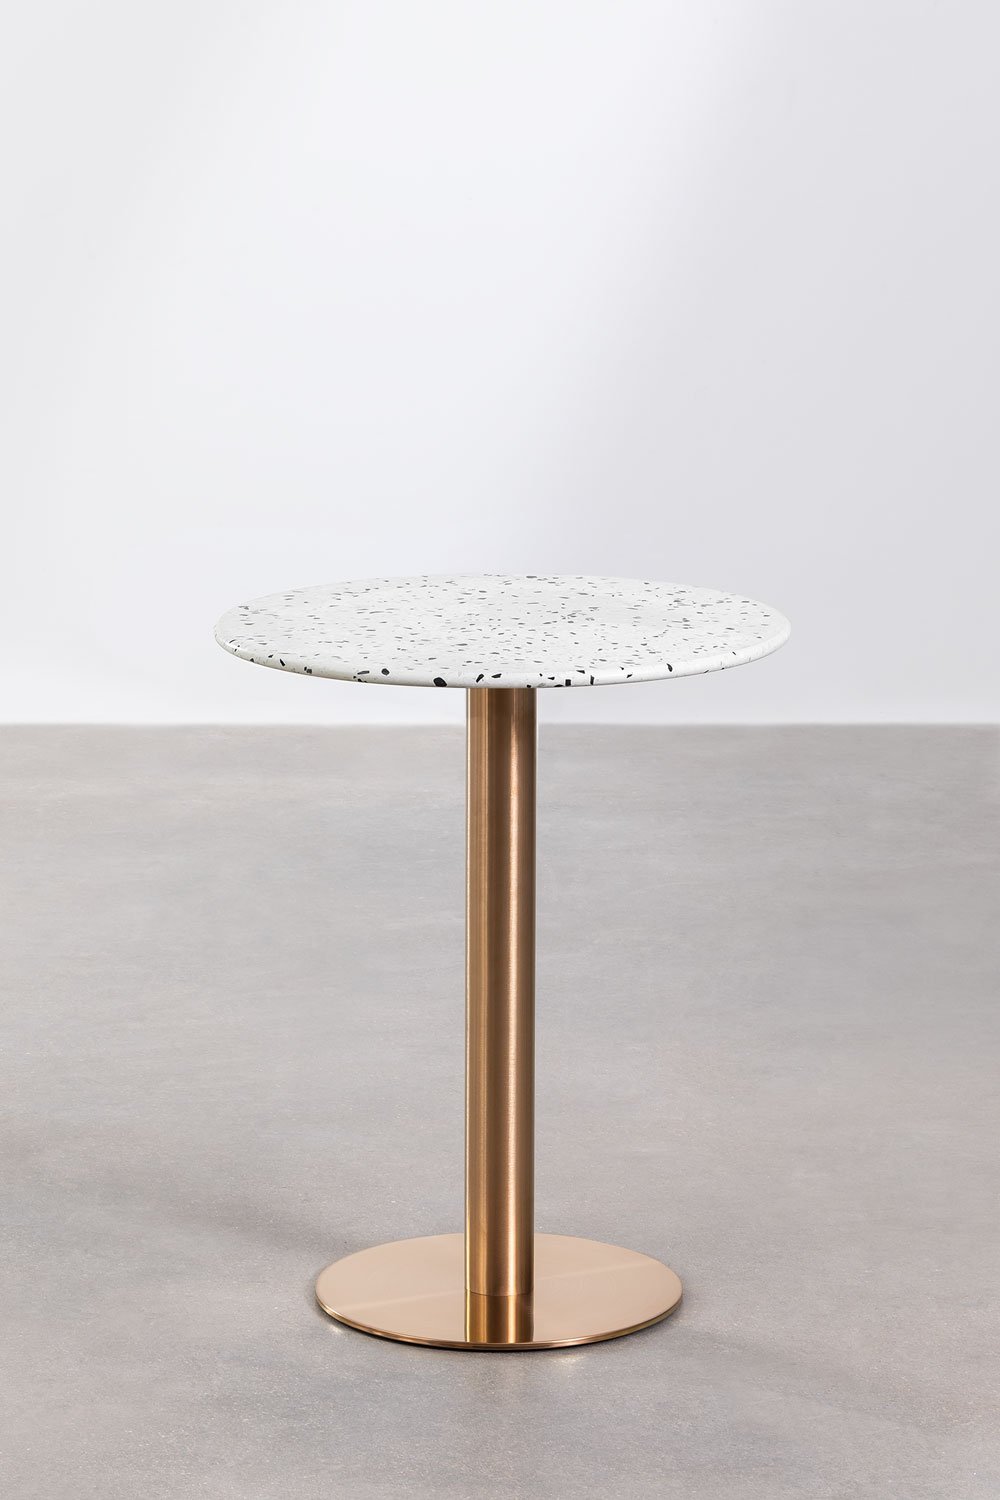 Table de Bar Ronde en Terrazzo (Ø60 cm) Malibu, image de la galerie 1